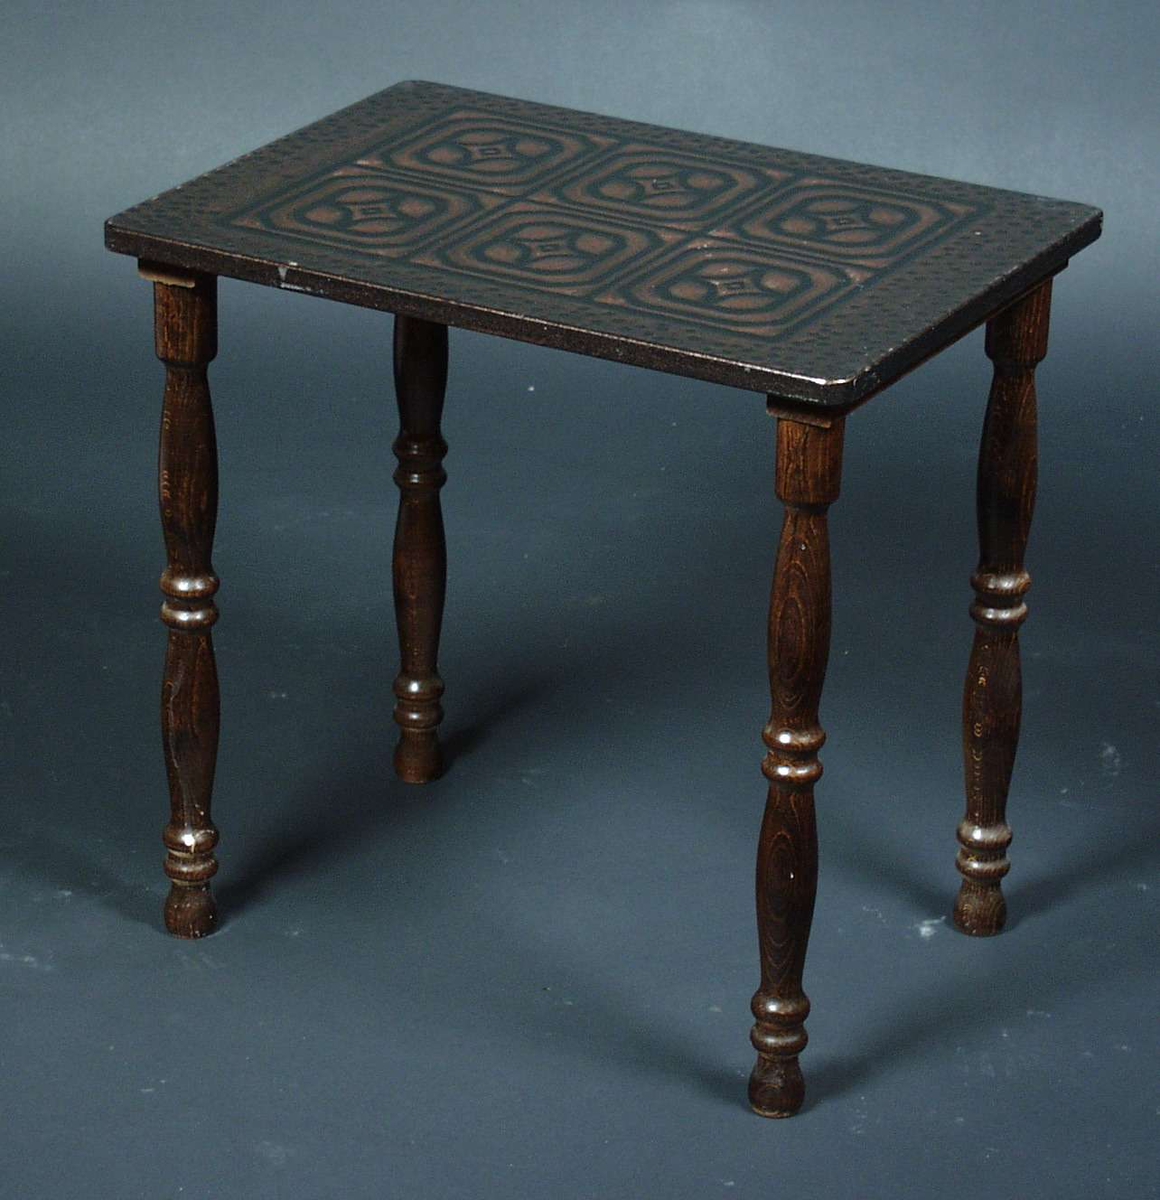 Settbord i bøk med dreide ben.
Bordplaten er i mønstret metall i form av stjerner.